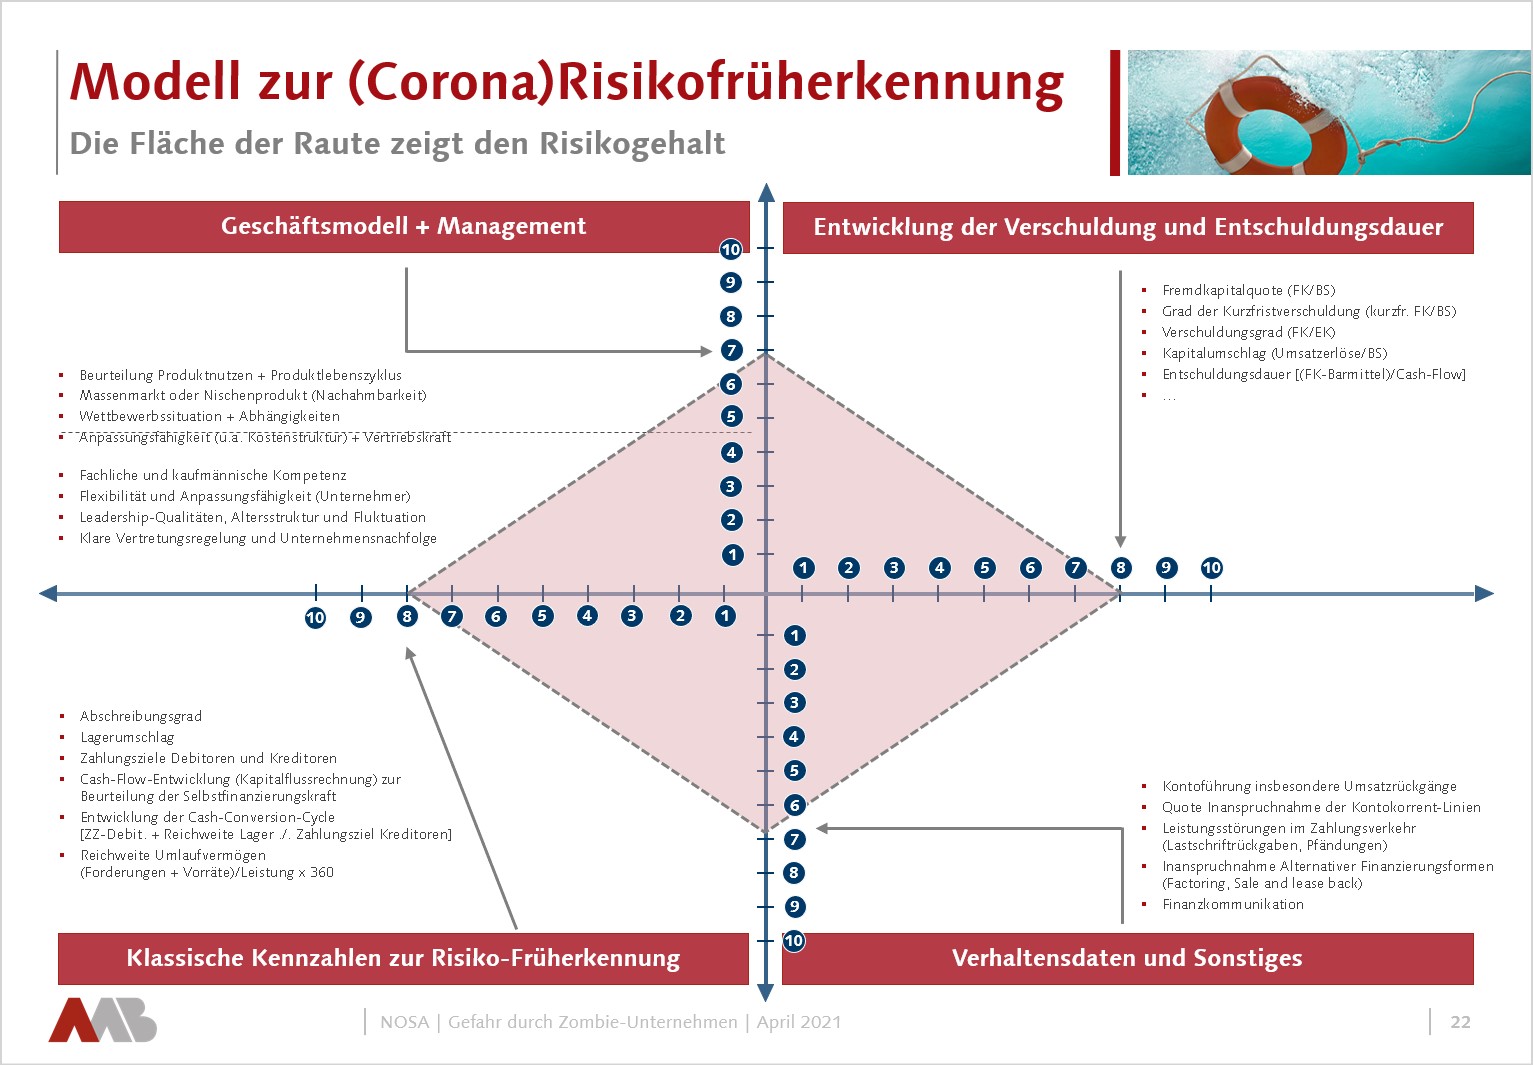 Modell zur Corona-Risikofrüherkennung